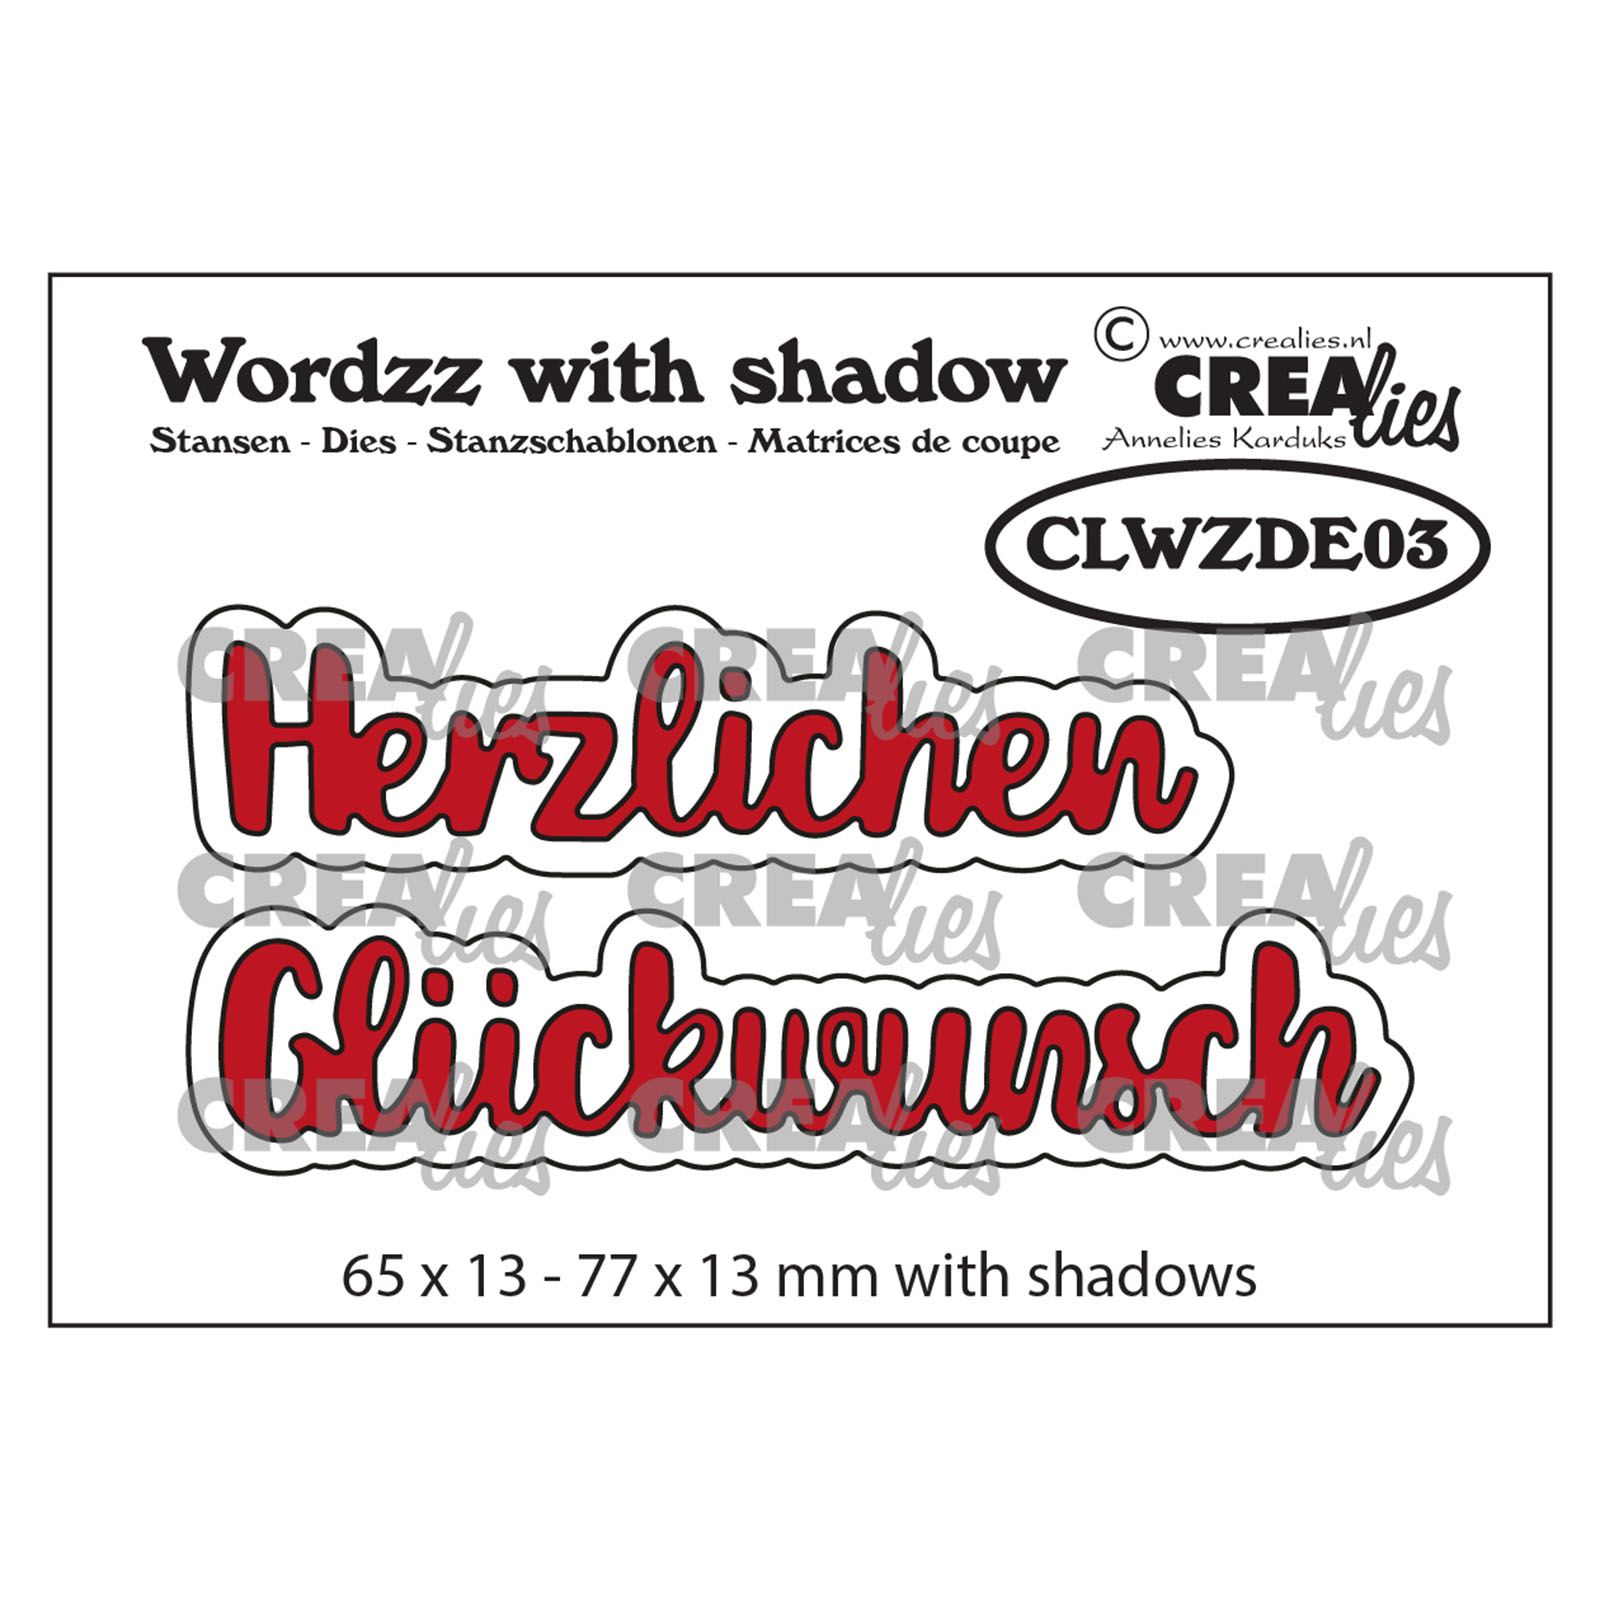 Crealies •  Wordzz with shadow dies "Herzlichen Glückwunsch"